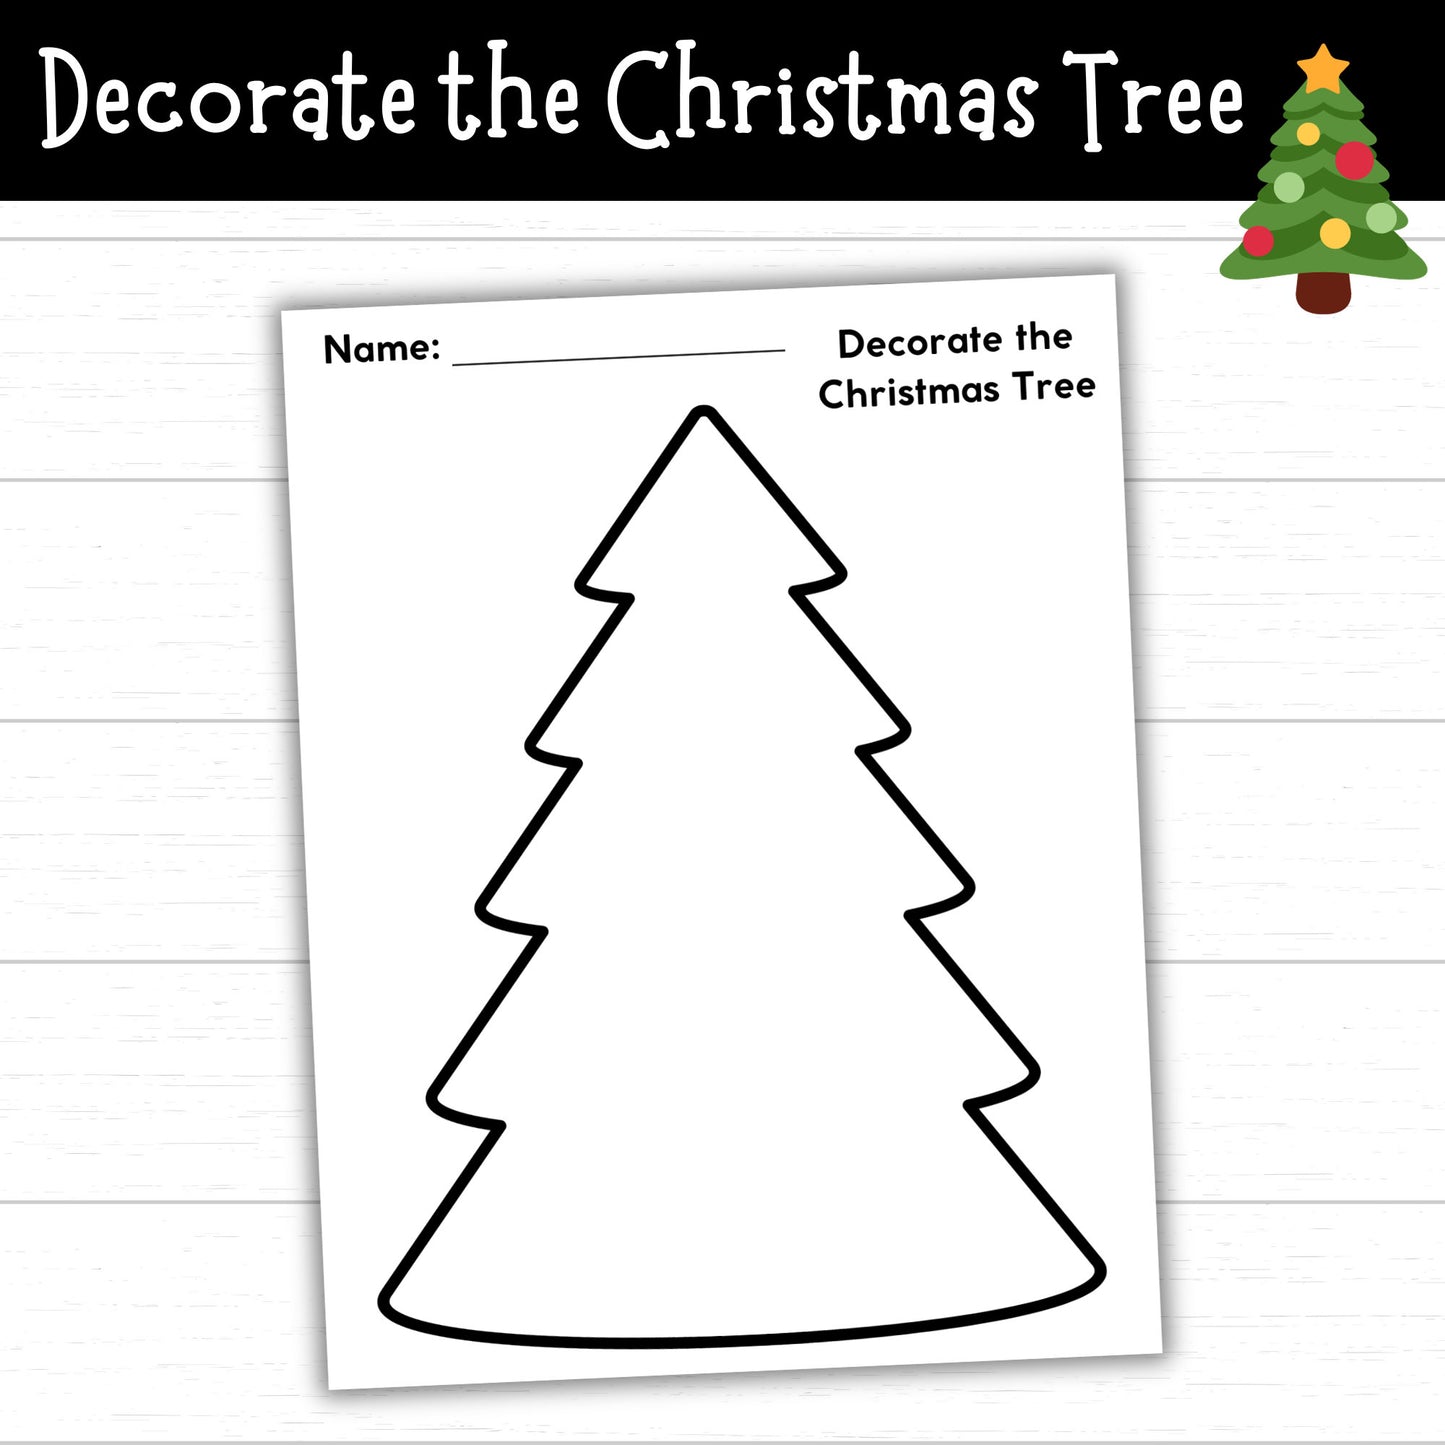 Decorate the Christmas Tree, Christmas Tree Craft, Christmas Tree Coloring Page, Printable Christmas Tree for Kids, Christmas Tree Activity